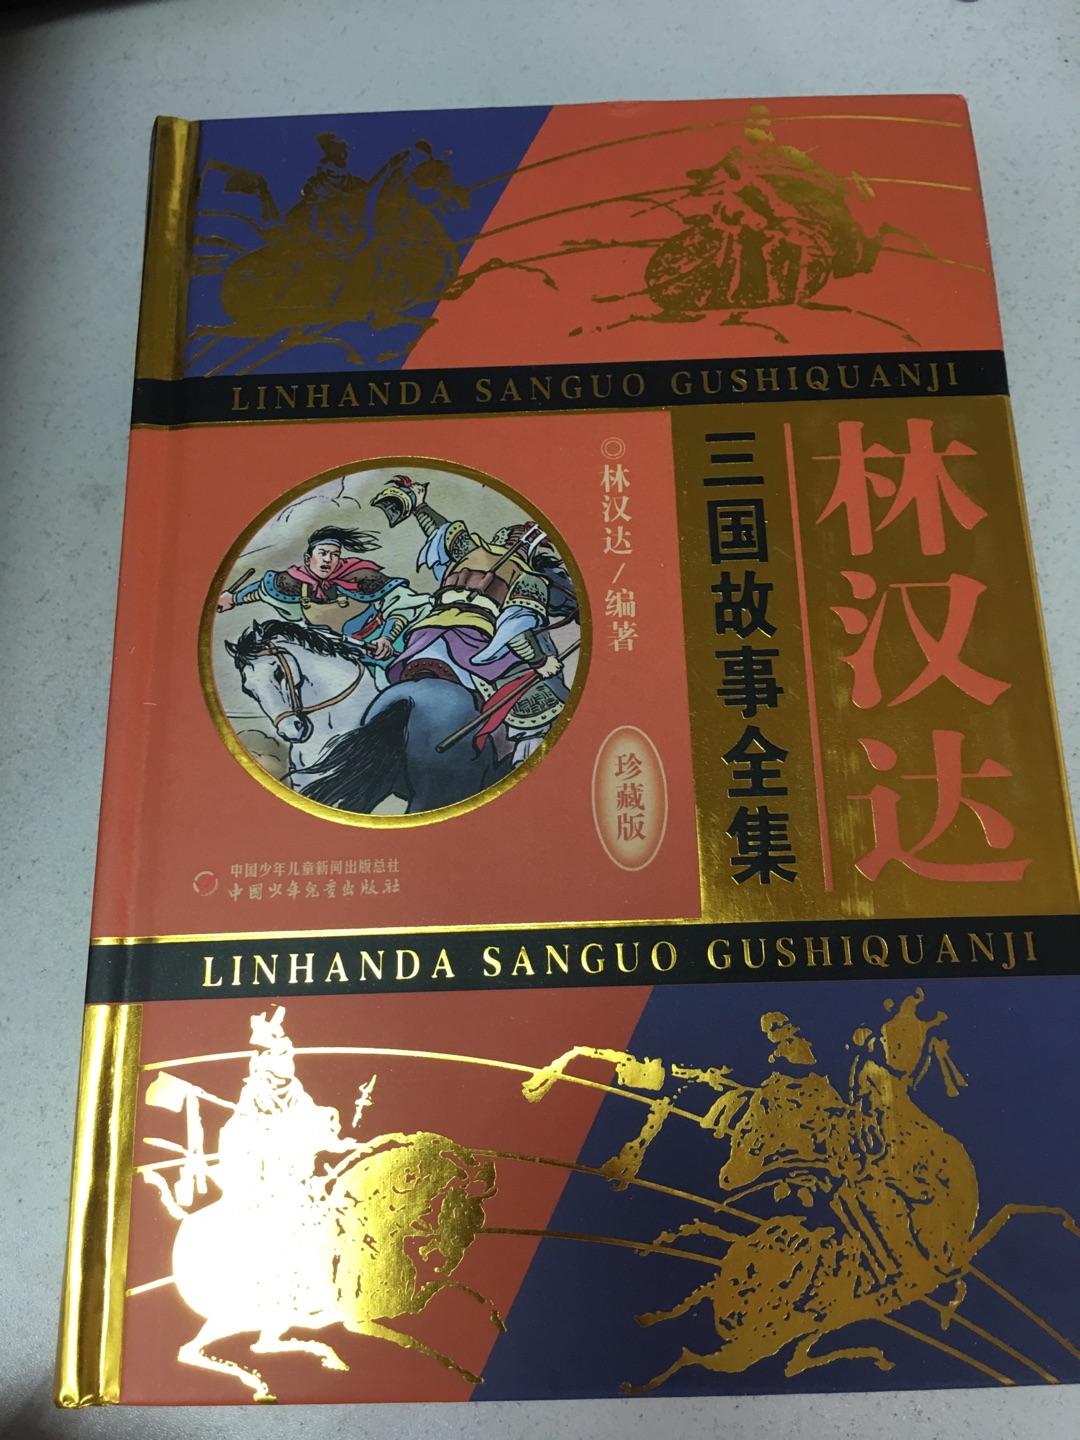 林老师的历史书语言通俗易懂，新出版的三国故事，内容精良，适合孩子阅读